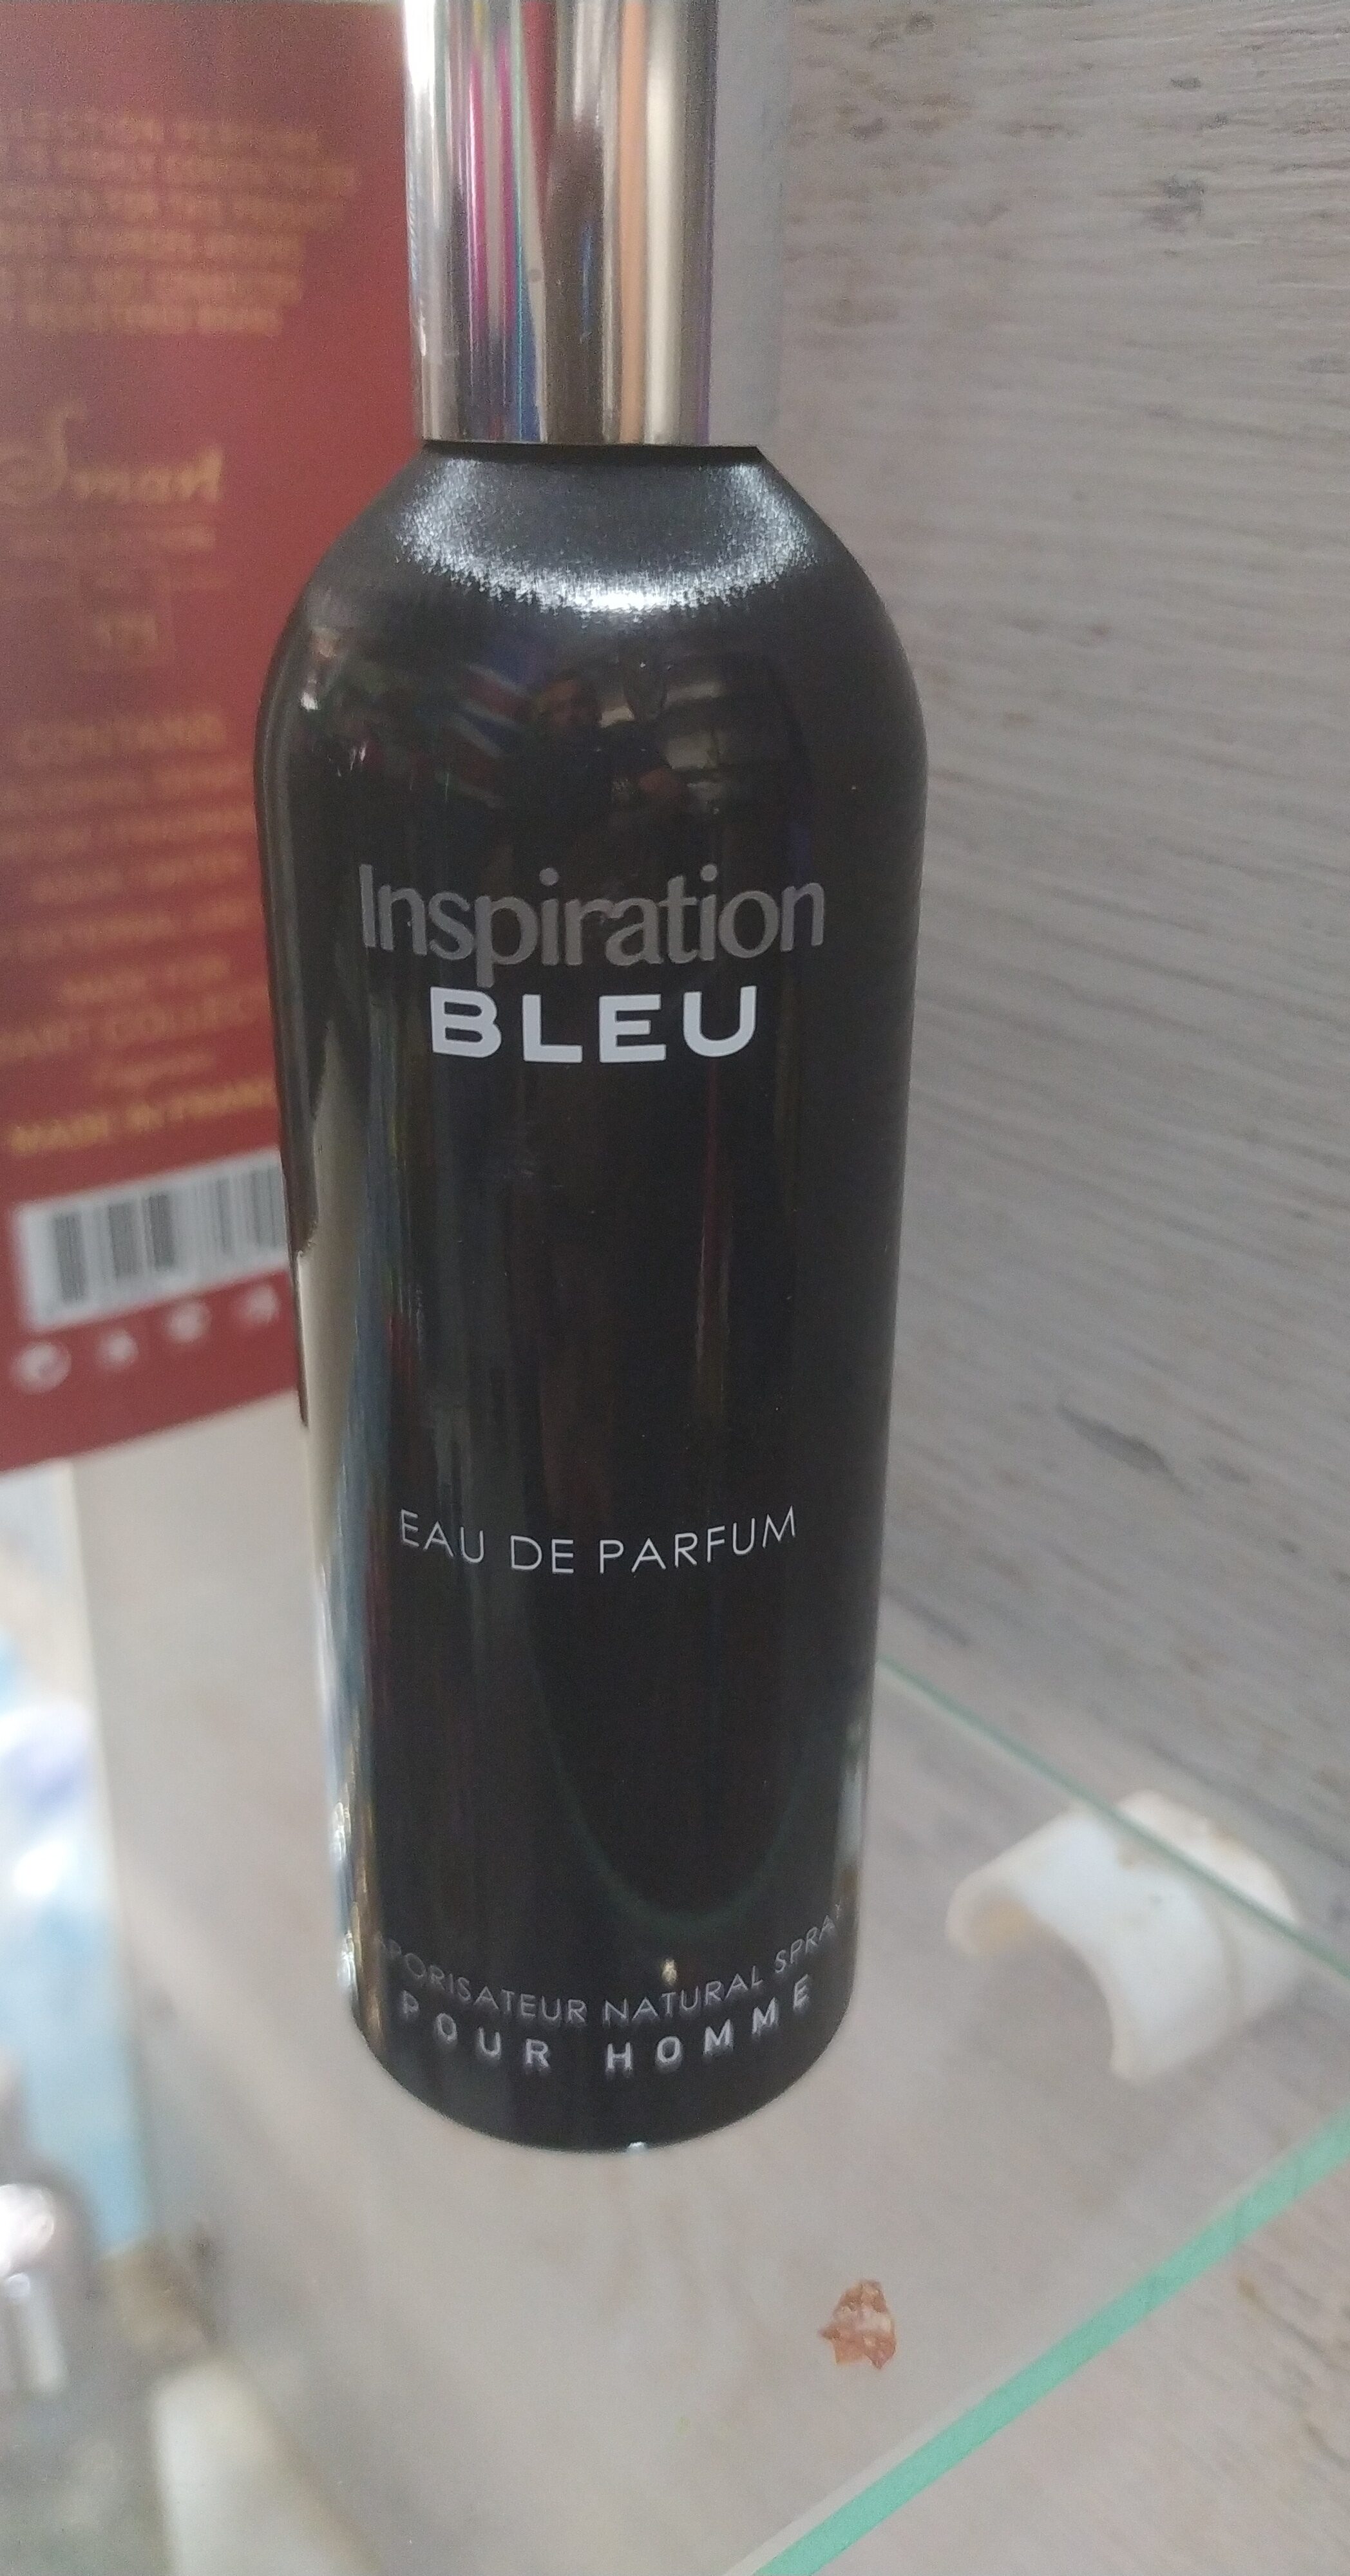 Inspiration bleu - Produkt - en